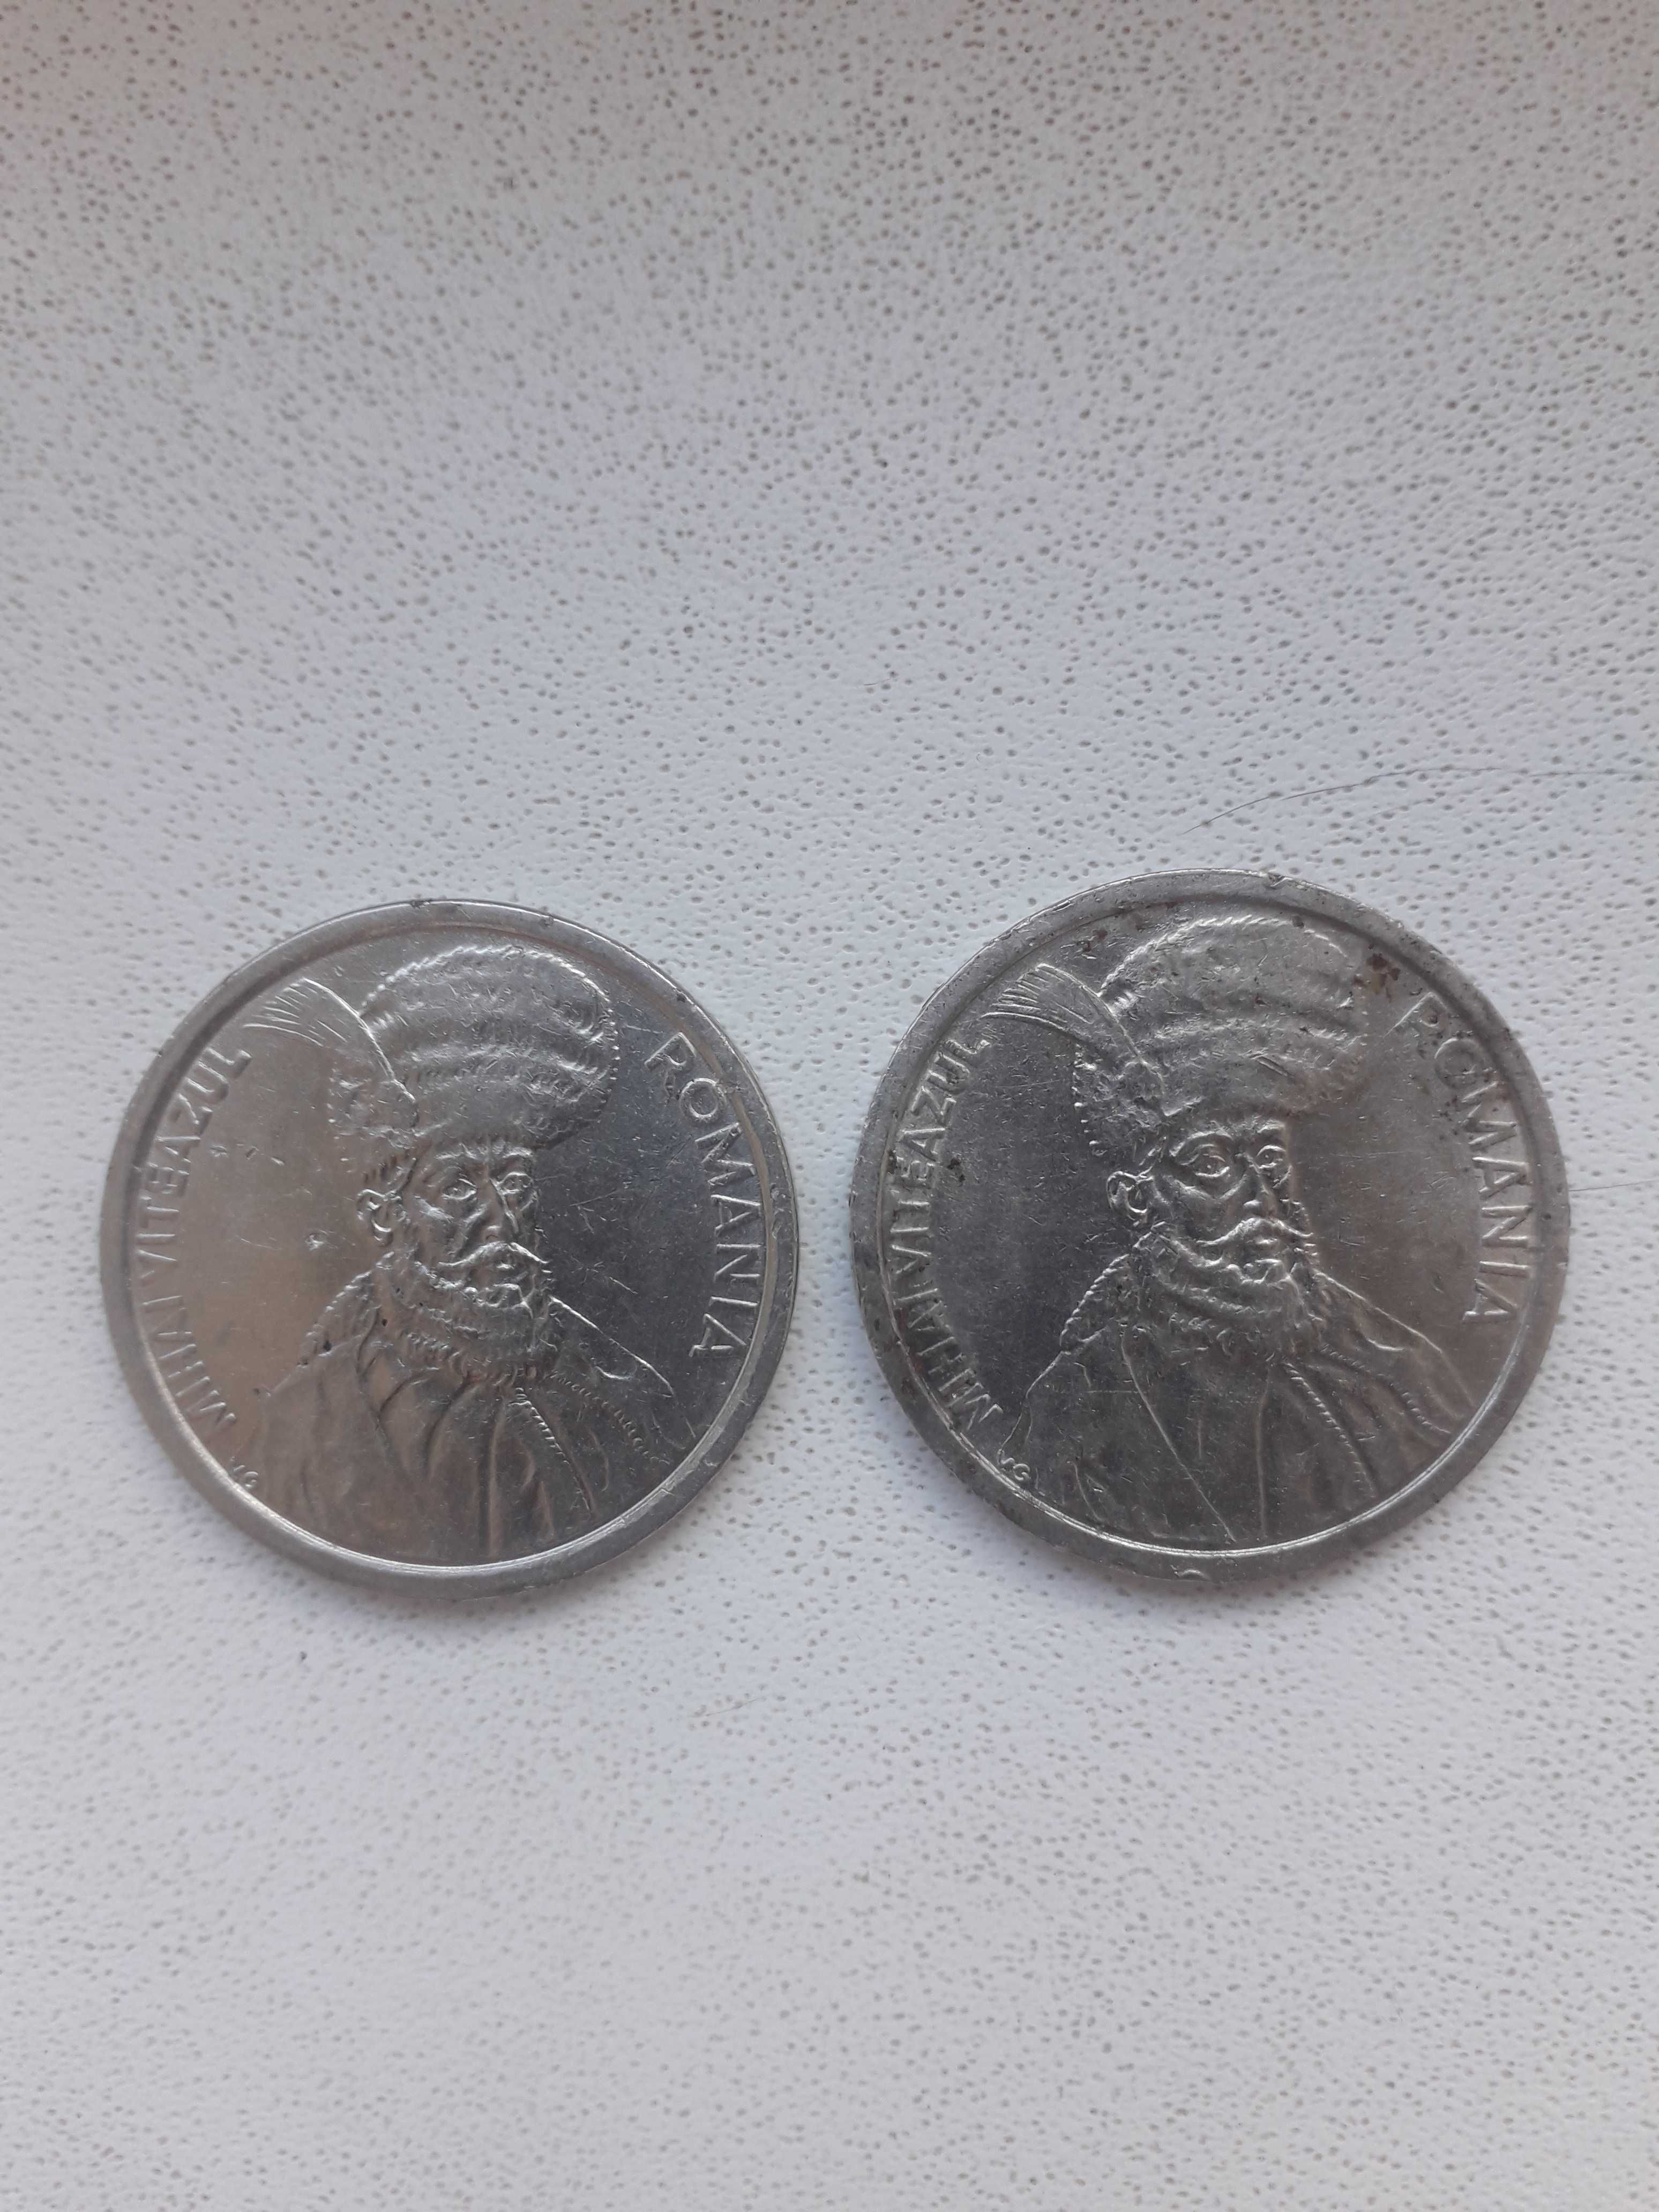 Vand 2 monede colectie de 100 de lei din anul 1992 cu Mihai Viteazul